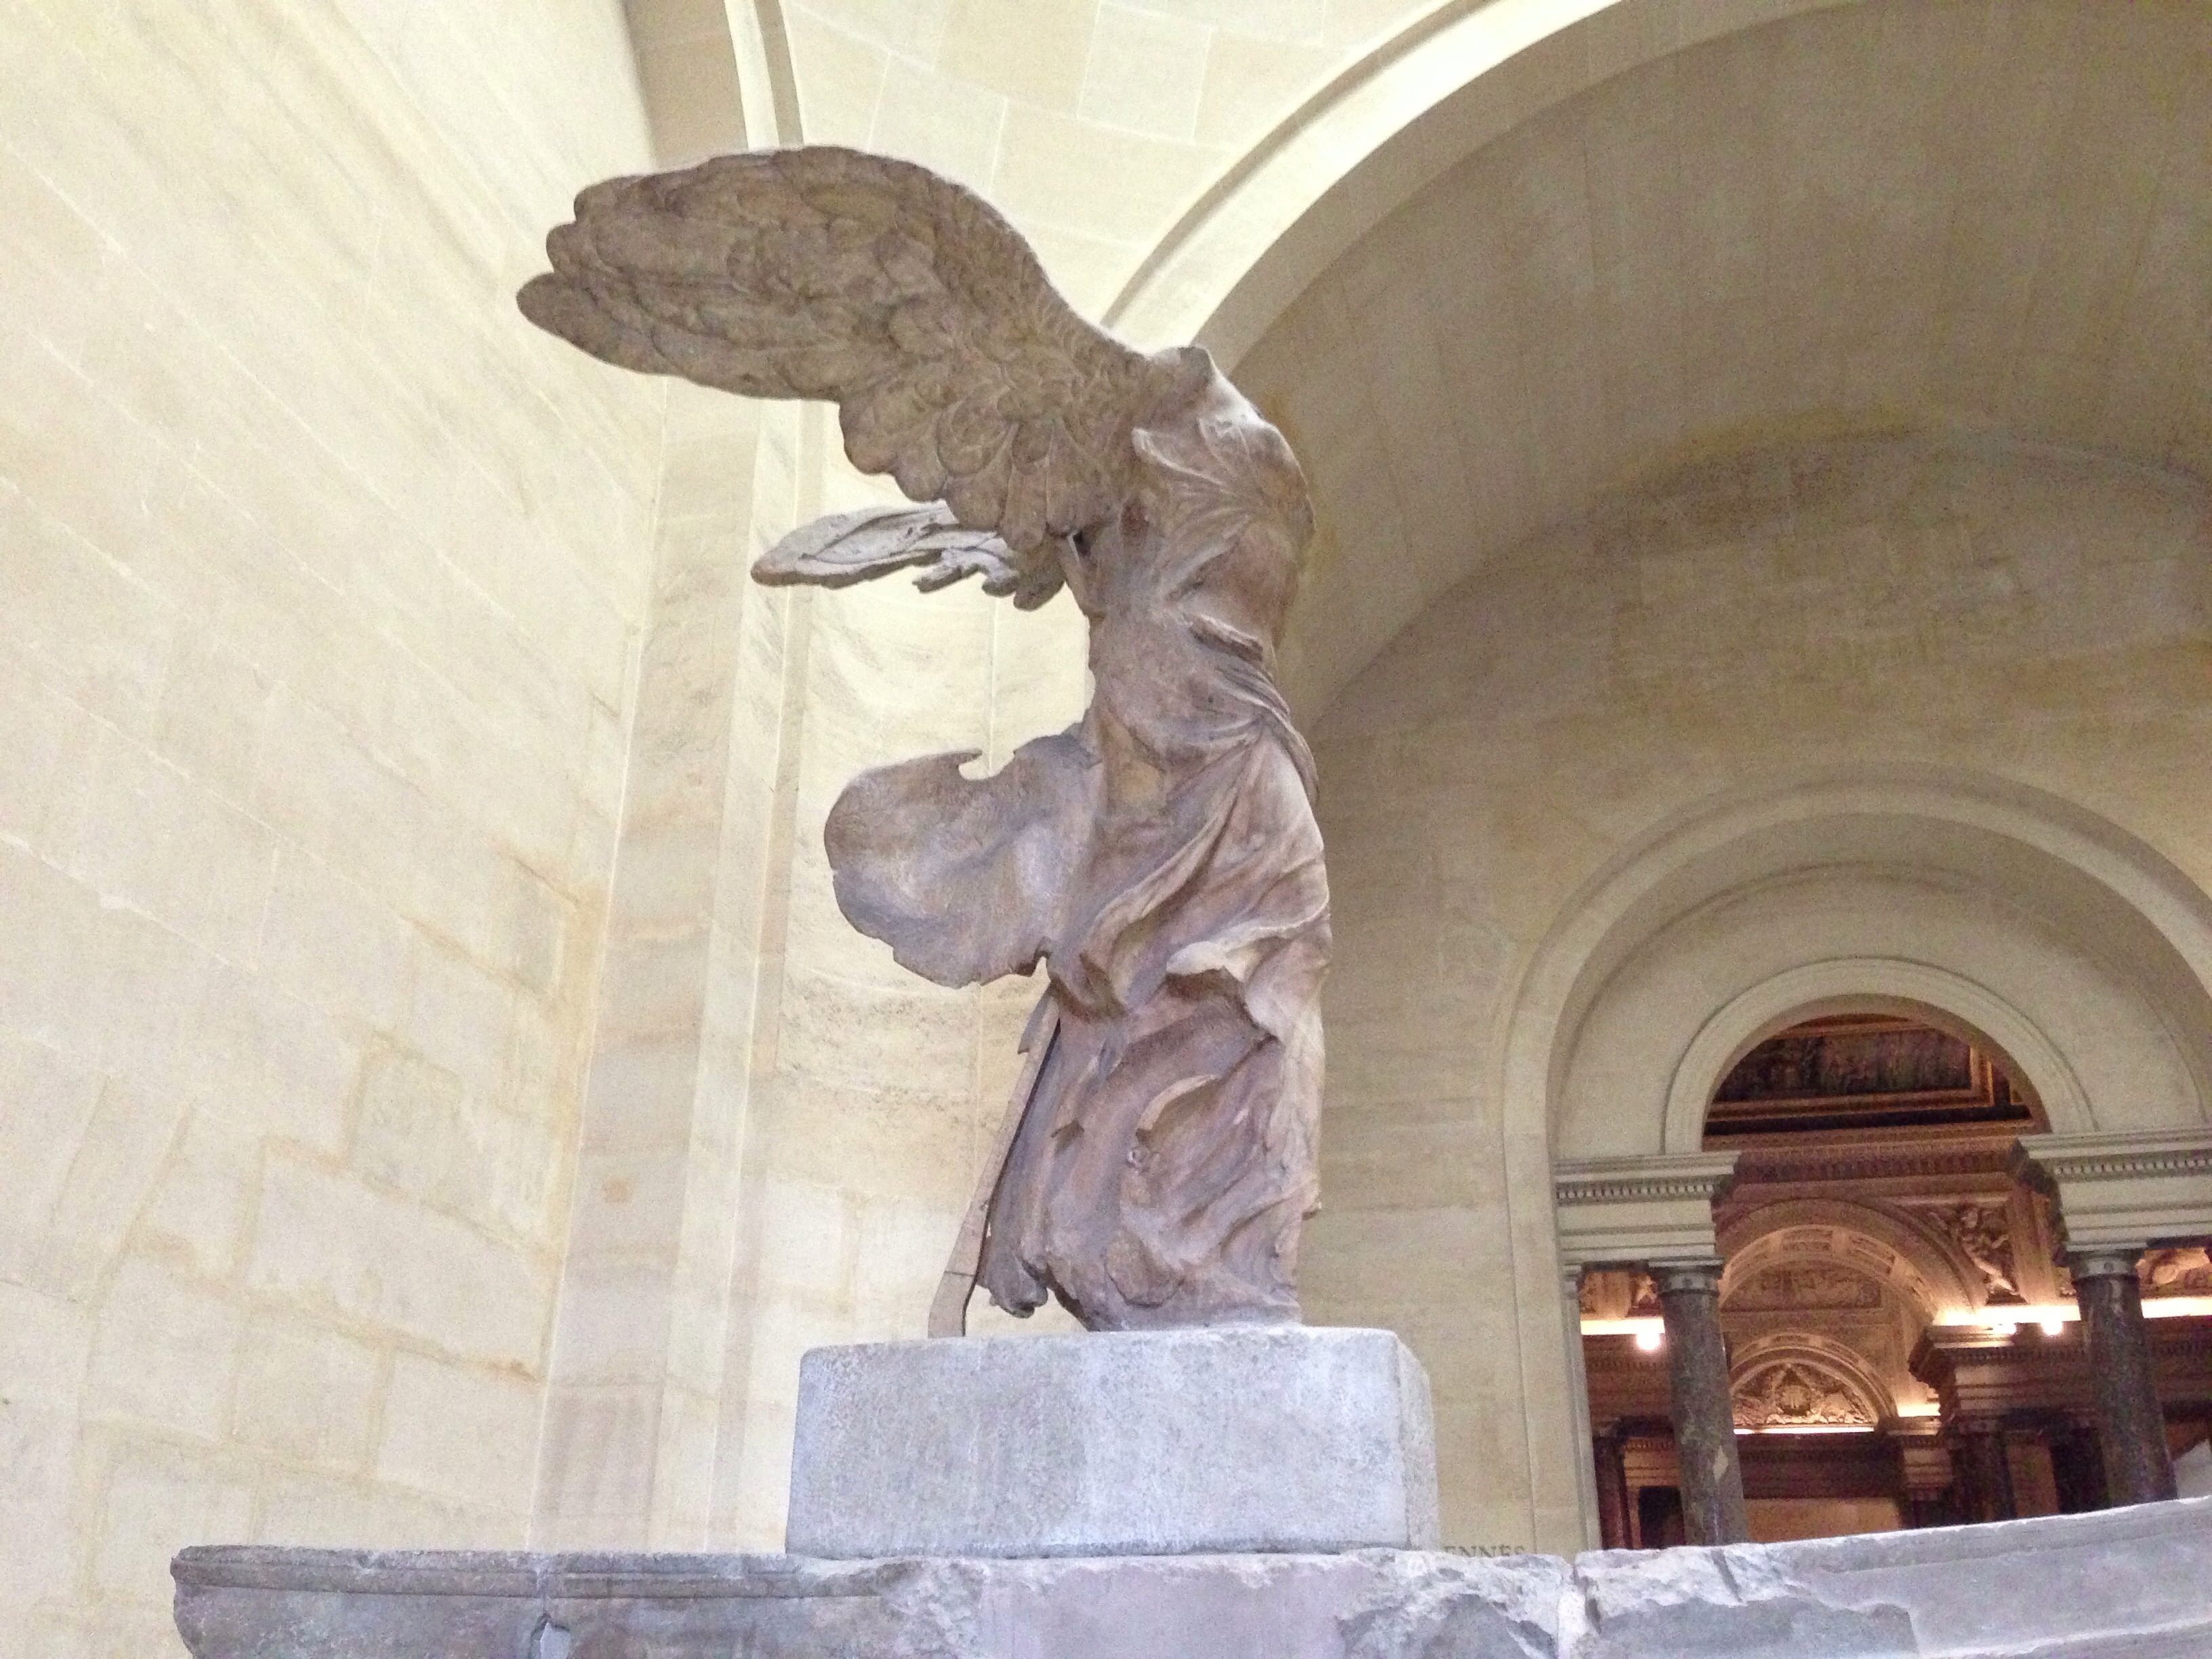 ルーブル美術館で「サモトラケのニケ」像のオーラを体感してきた